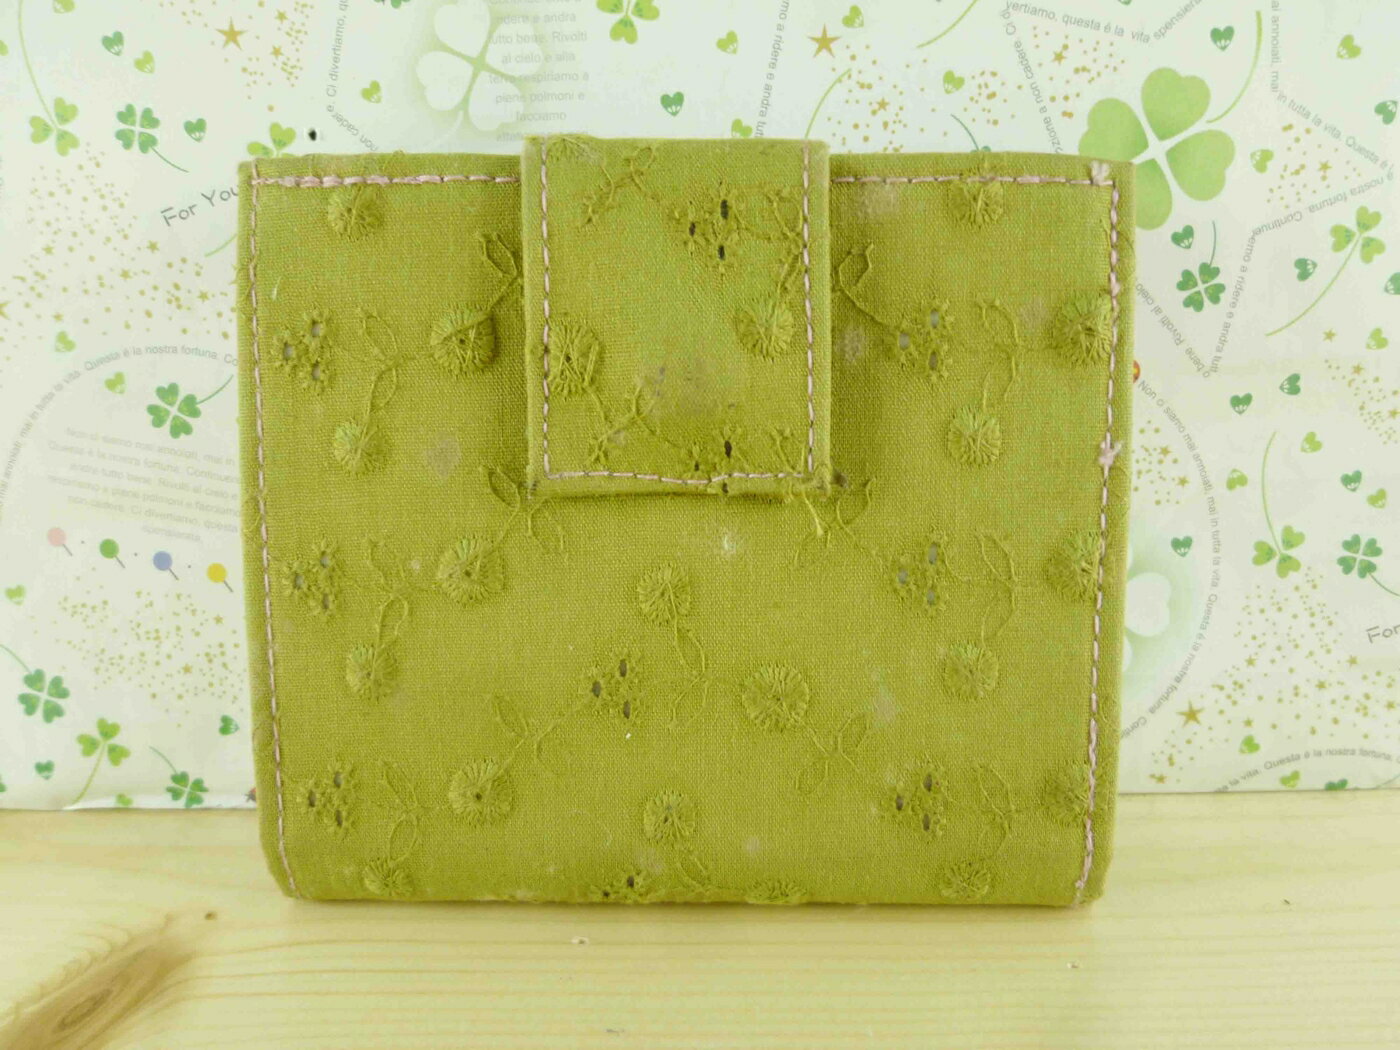 【震撼精品百貨】日本製蕾絲皮夾 短夾-墨綠色 震撼日式精品百貨